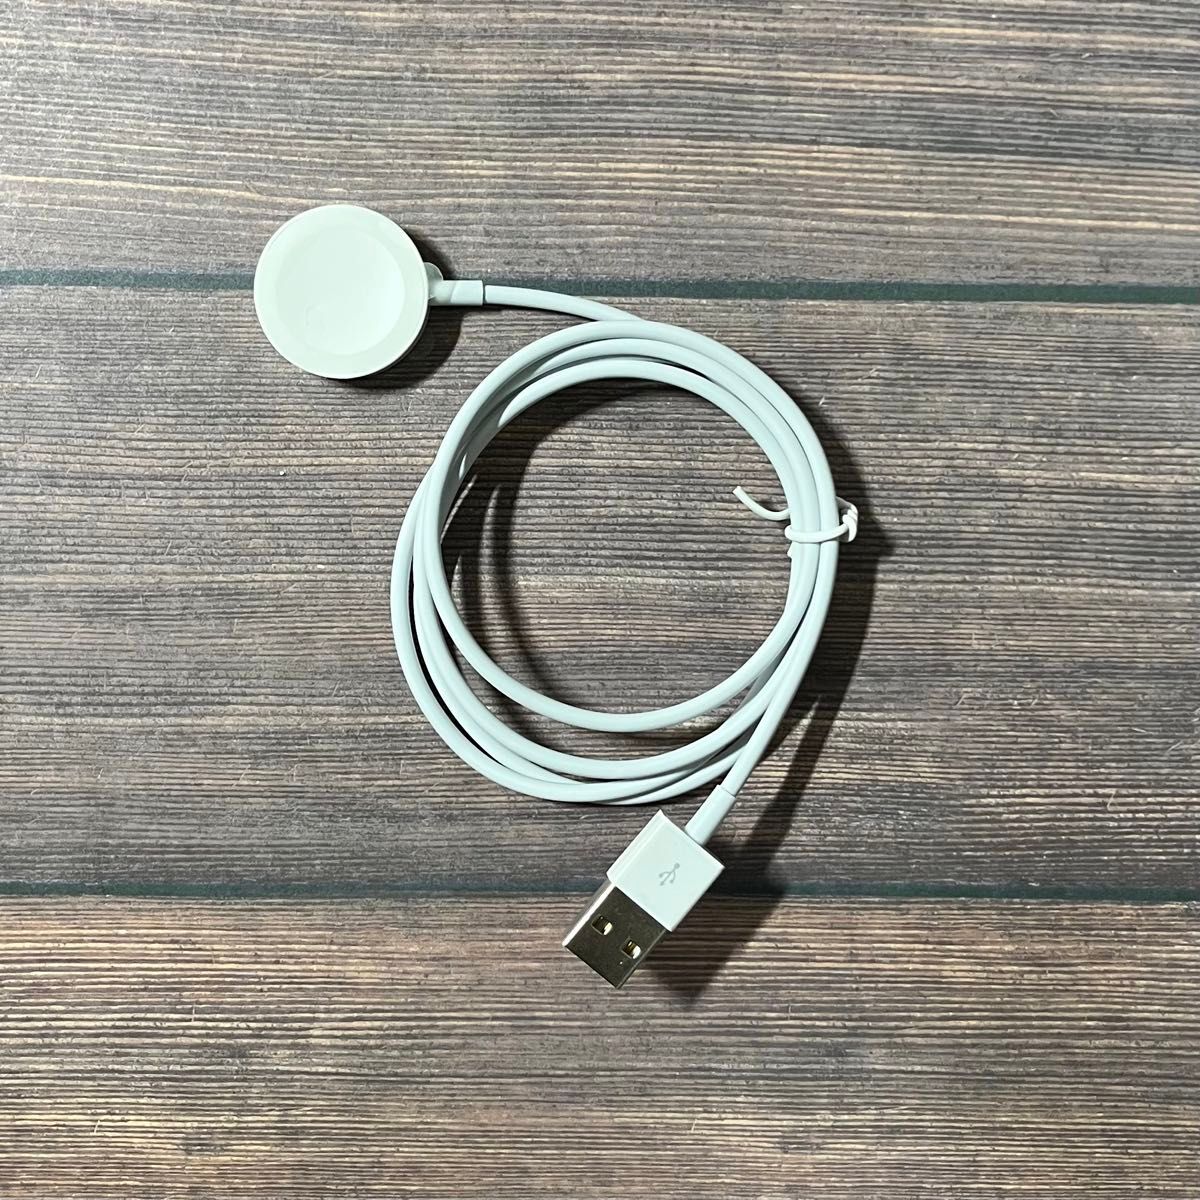 【新品】Apple Watch 充電器 USB 急速充電 3時間で満充電